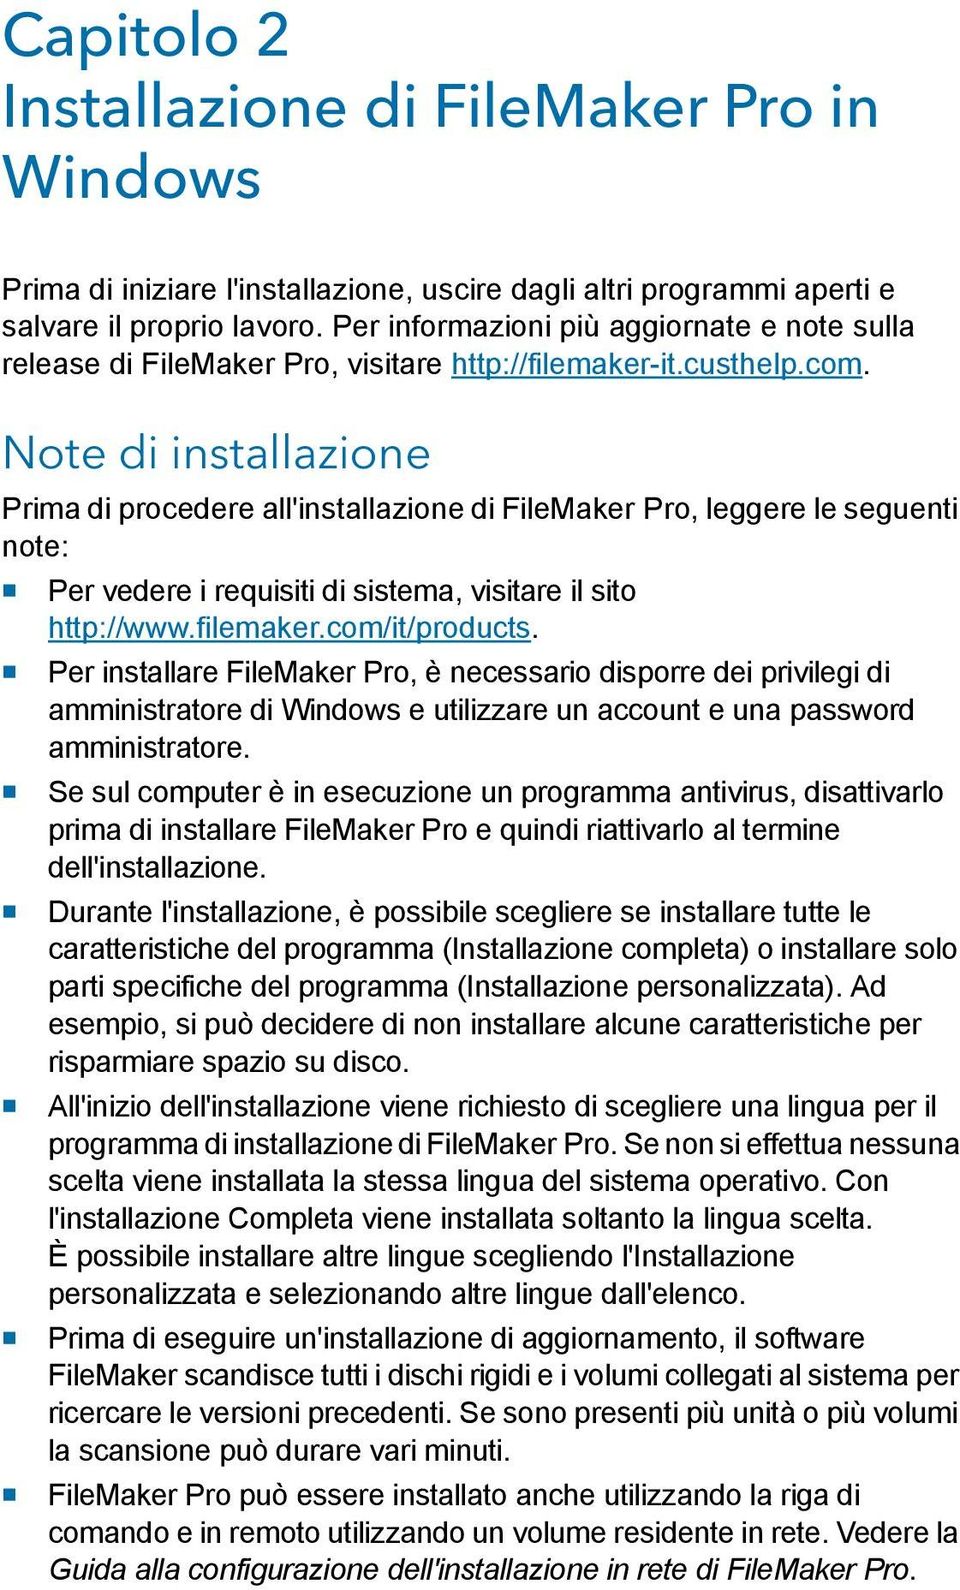 Note di installazione Prima di procedere all'installazione di FileMaker Pro, leggere le seguenti note: 1 Per vedere i requisiti di sistema, visitare il sito http://www.filemaker.com/it/products.